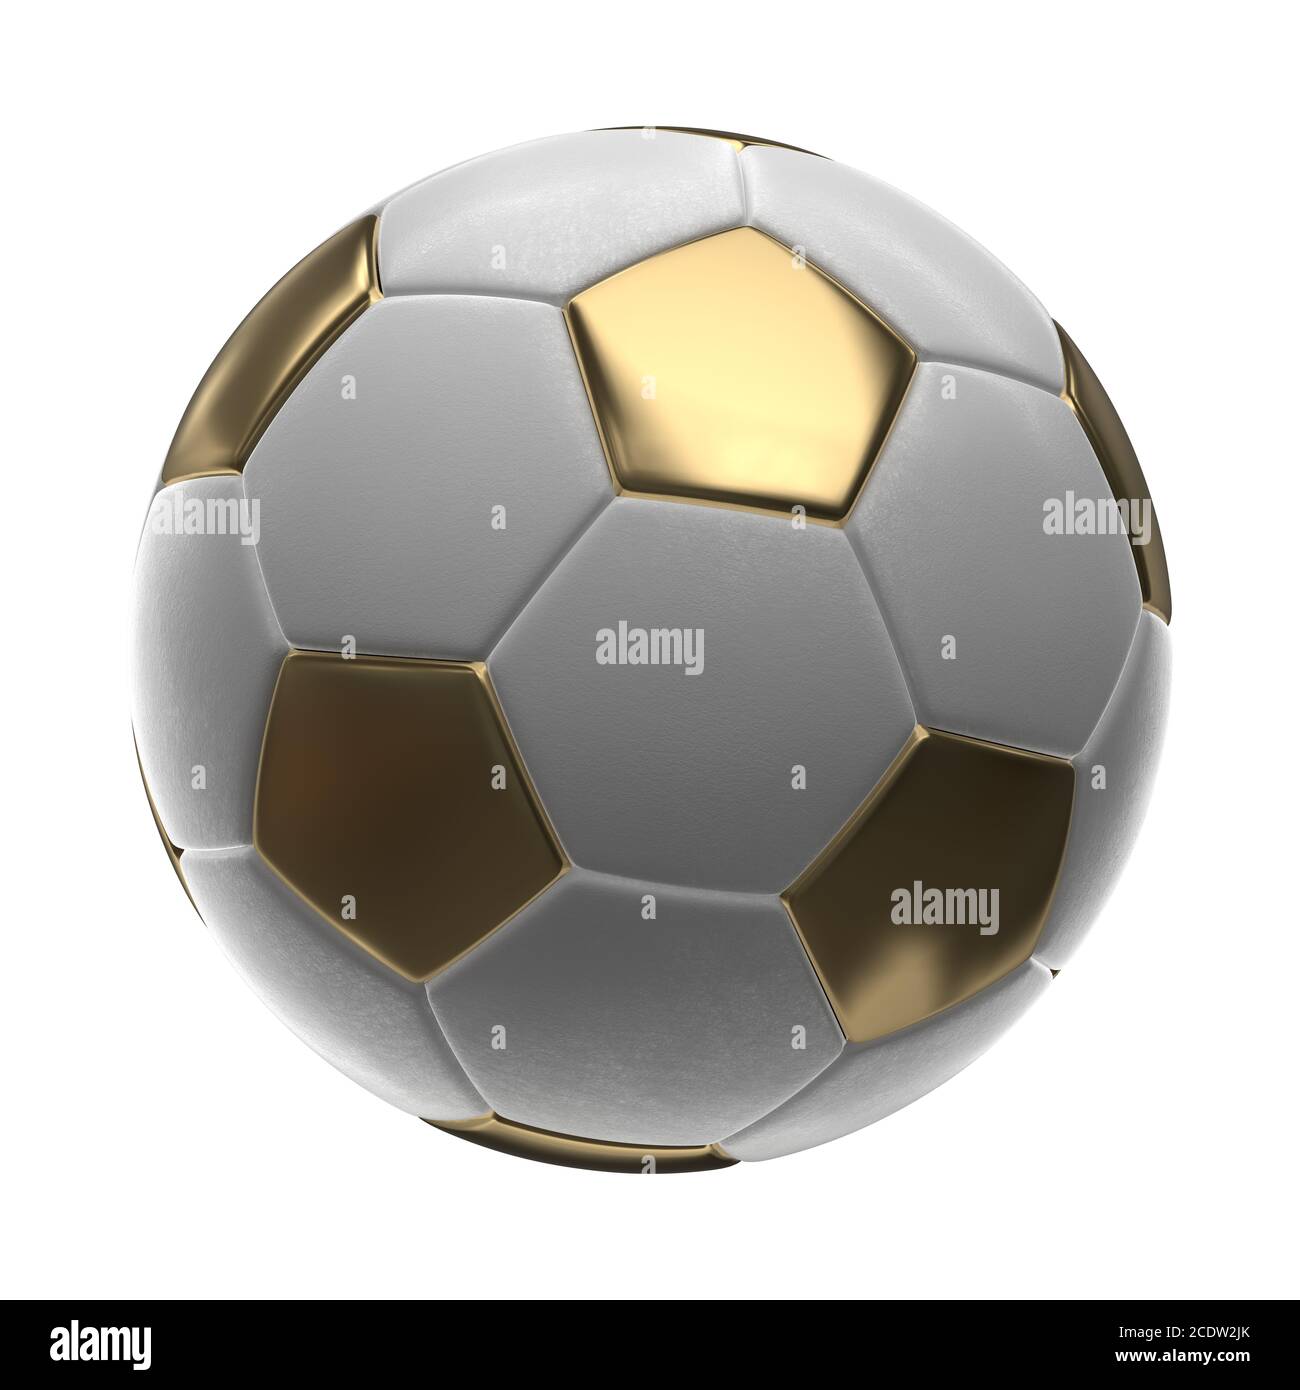 Golden Pallone da calcio isolati su sfondo bianco 3d illustrazione Foto Stock